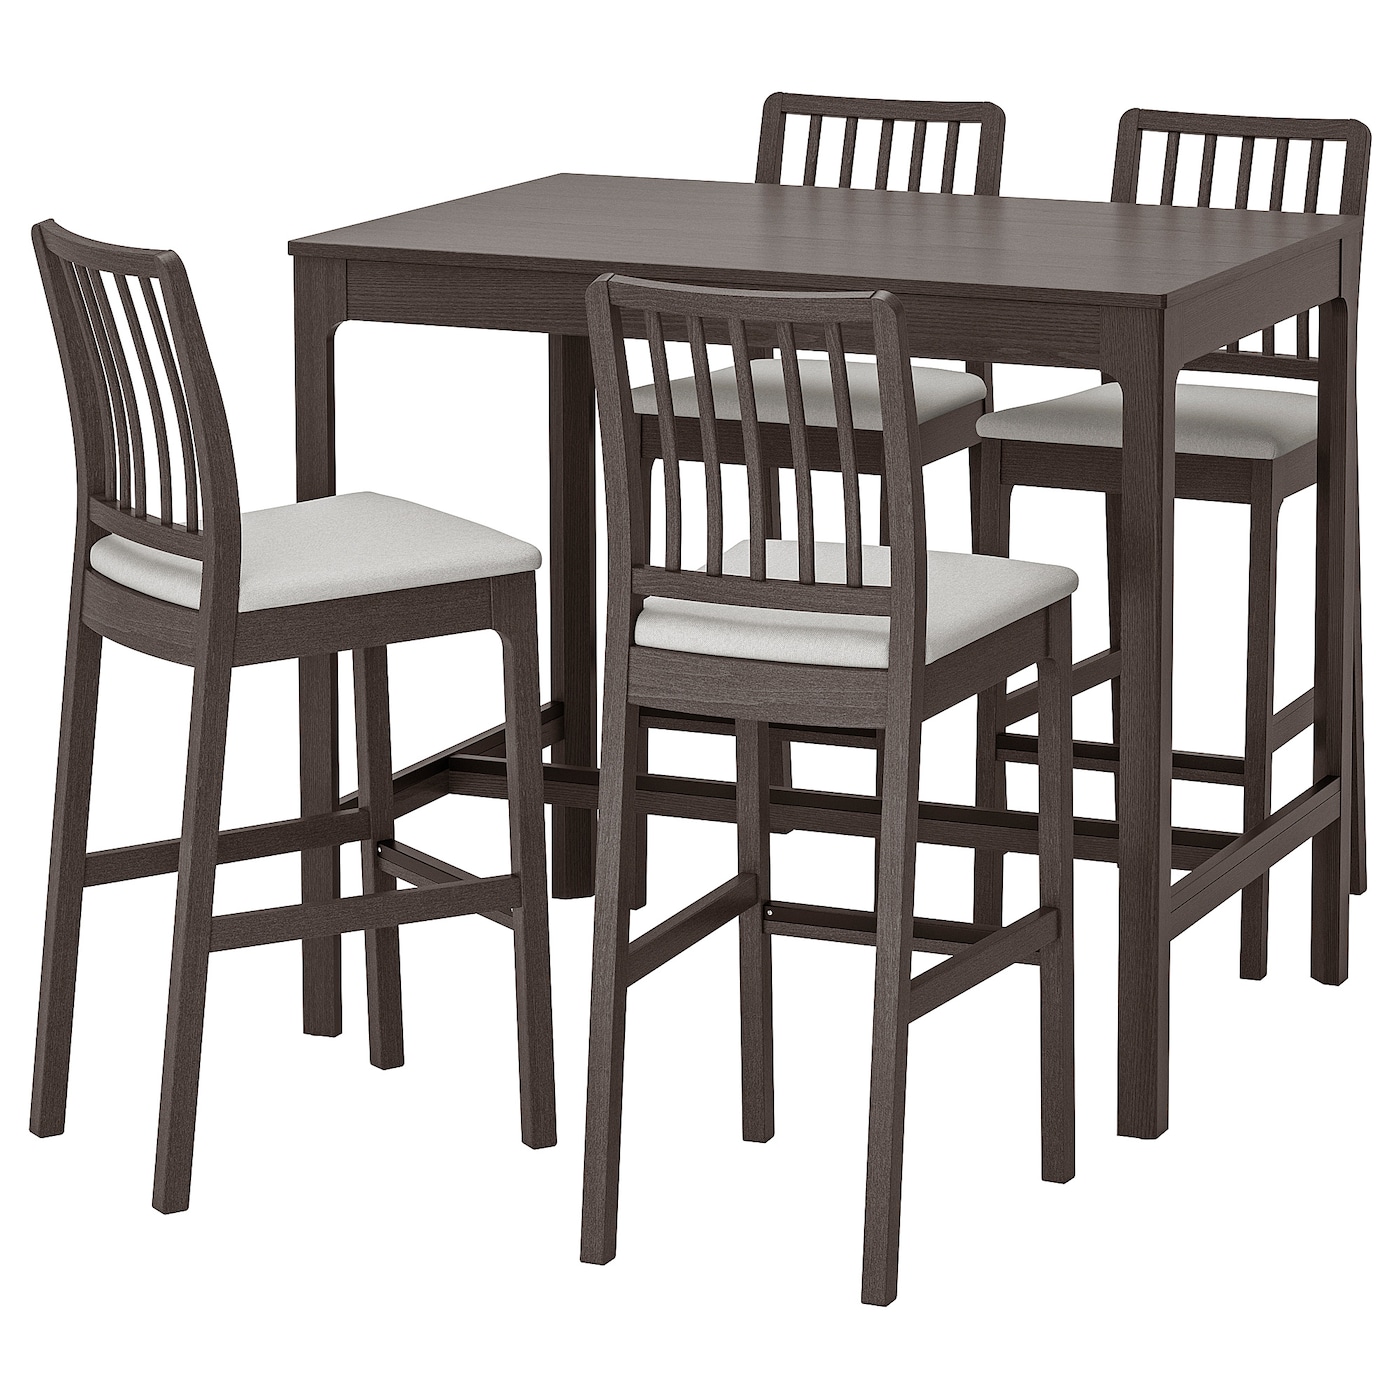 Комплект барного стола и барных стульевт - EKEDALEN IKEA/ЭКЕДАЛЕТ ИКЕА, 120 см, коричневый